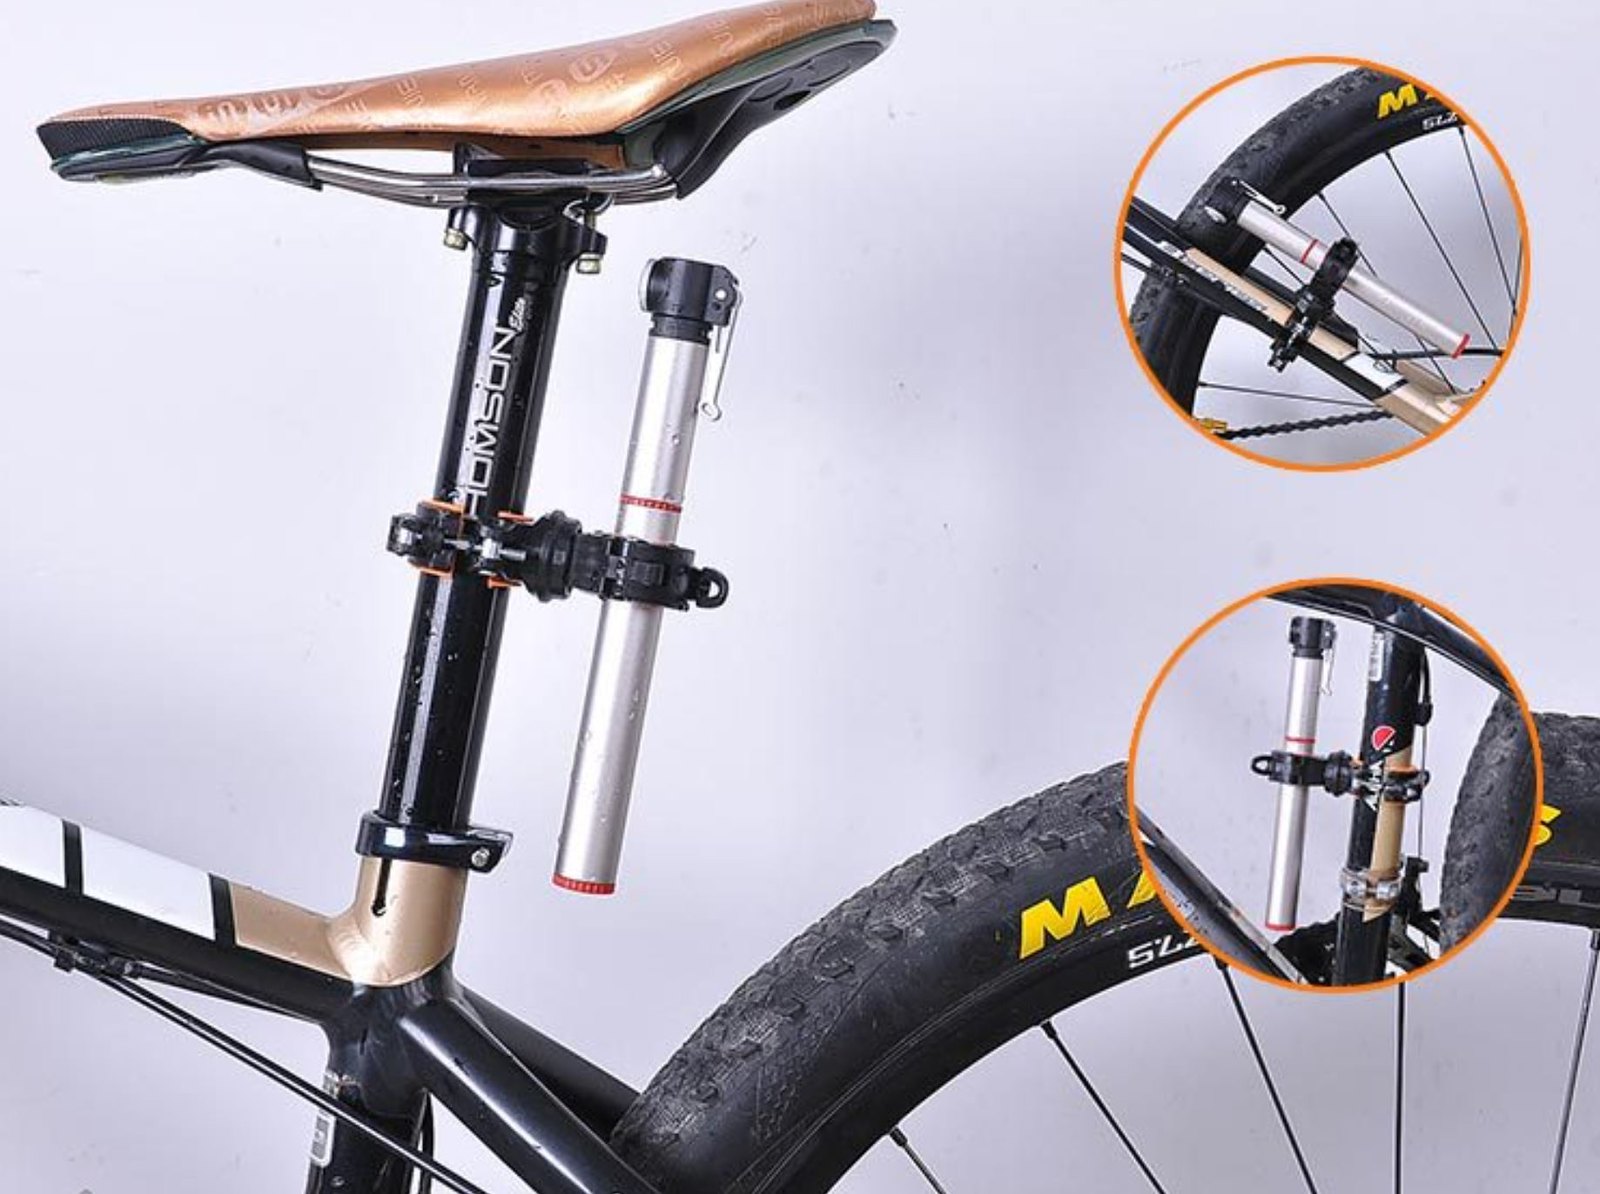 Chia sẻ cơ hội lắp đặt đèn xe đạp điện nhanh gọn lẹ từng bước chi tiết